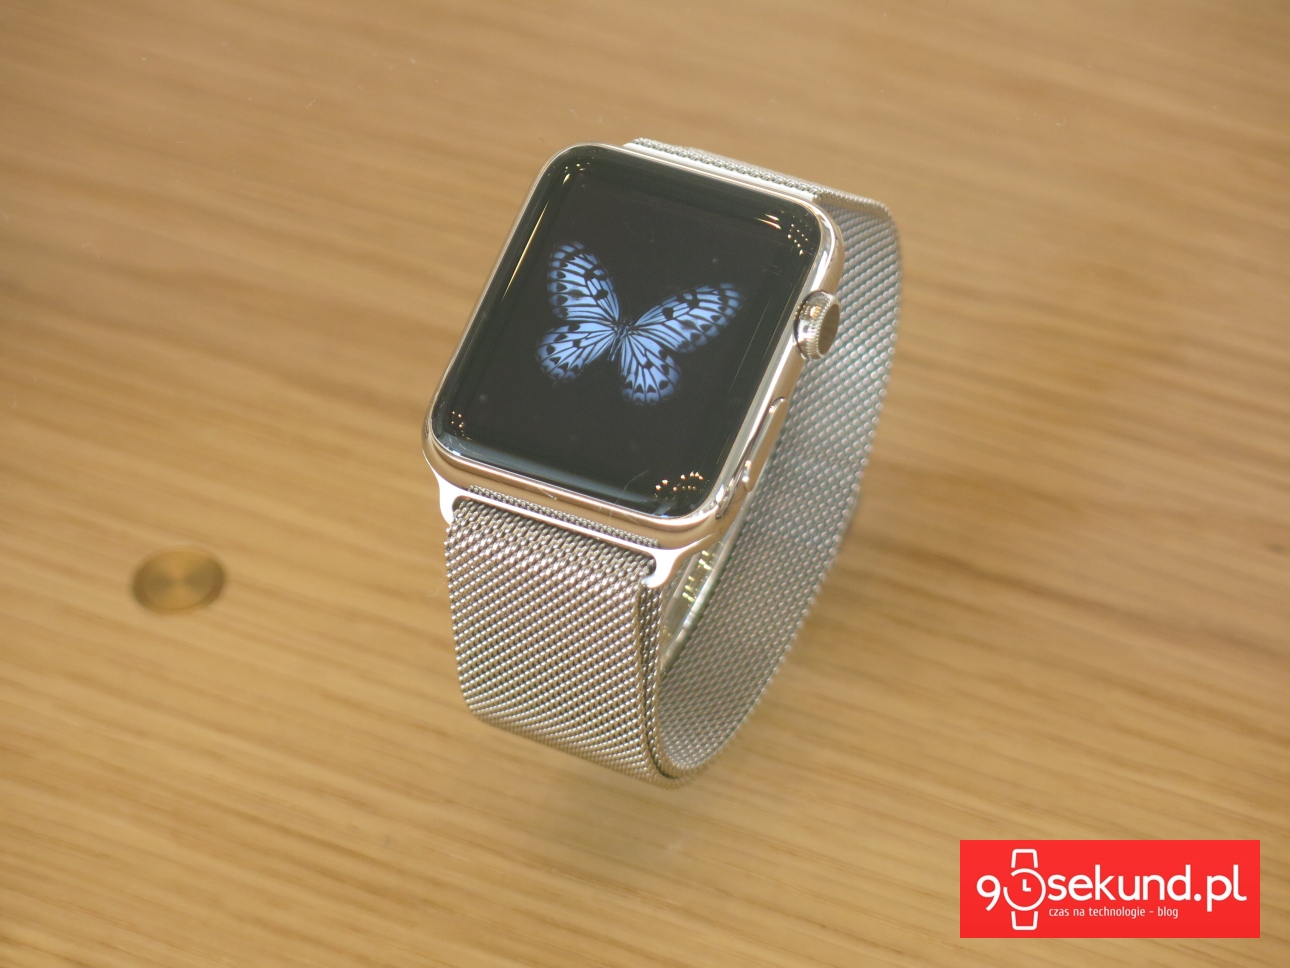 Apple Watch 1-gen. - 90sekund.pl